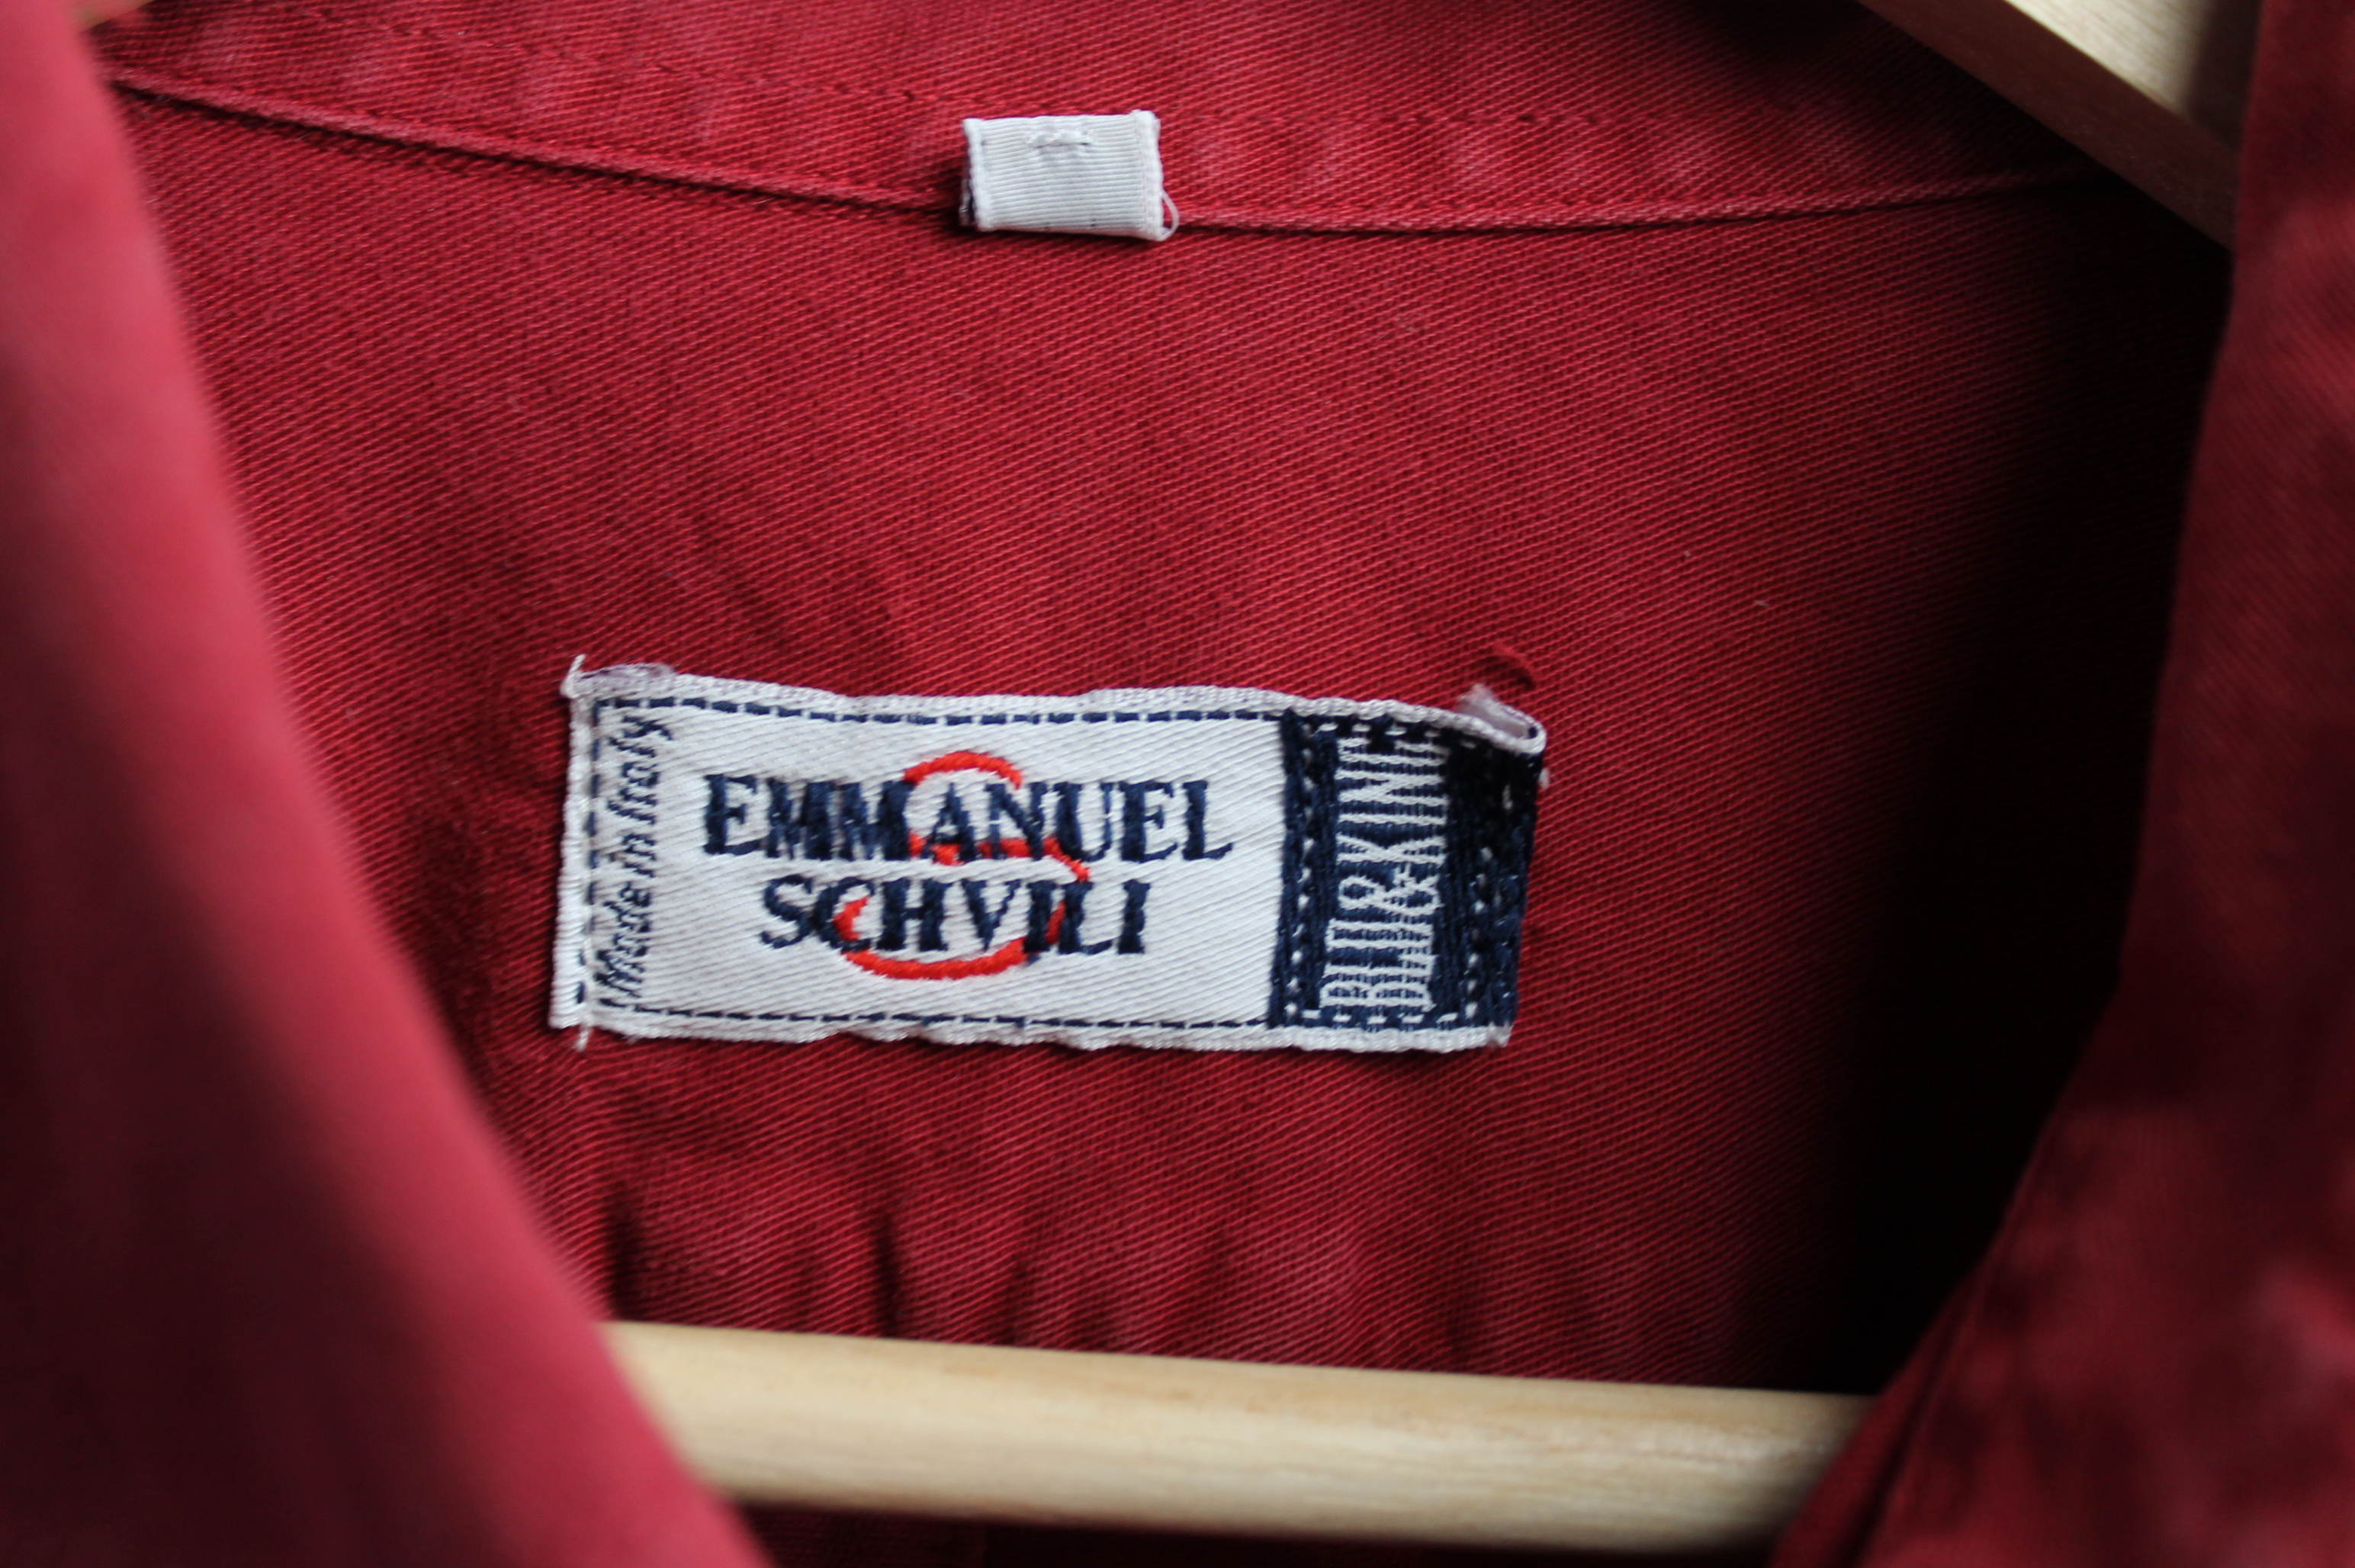 Emanuel Shvilli size XL - XXL